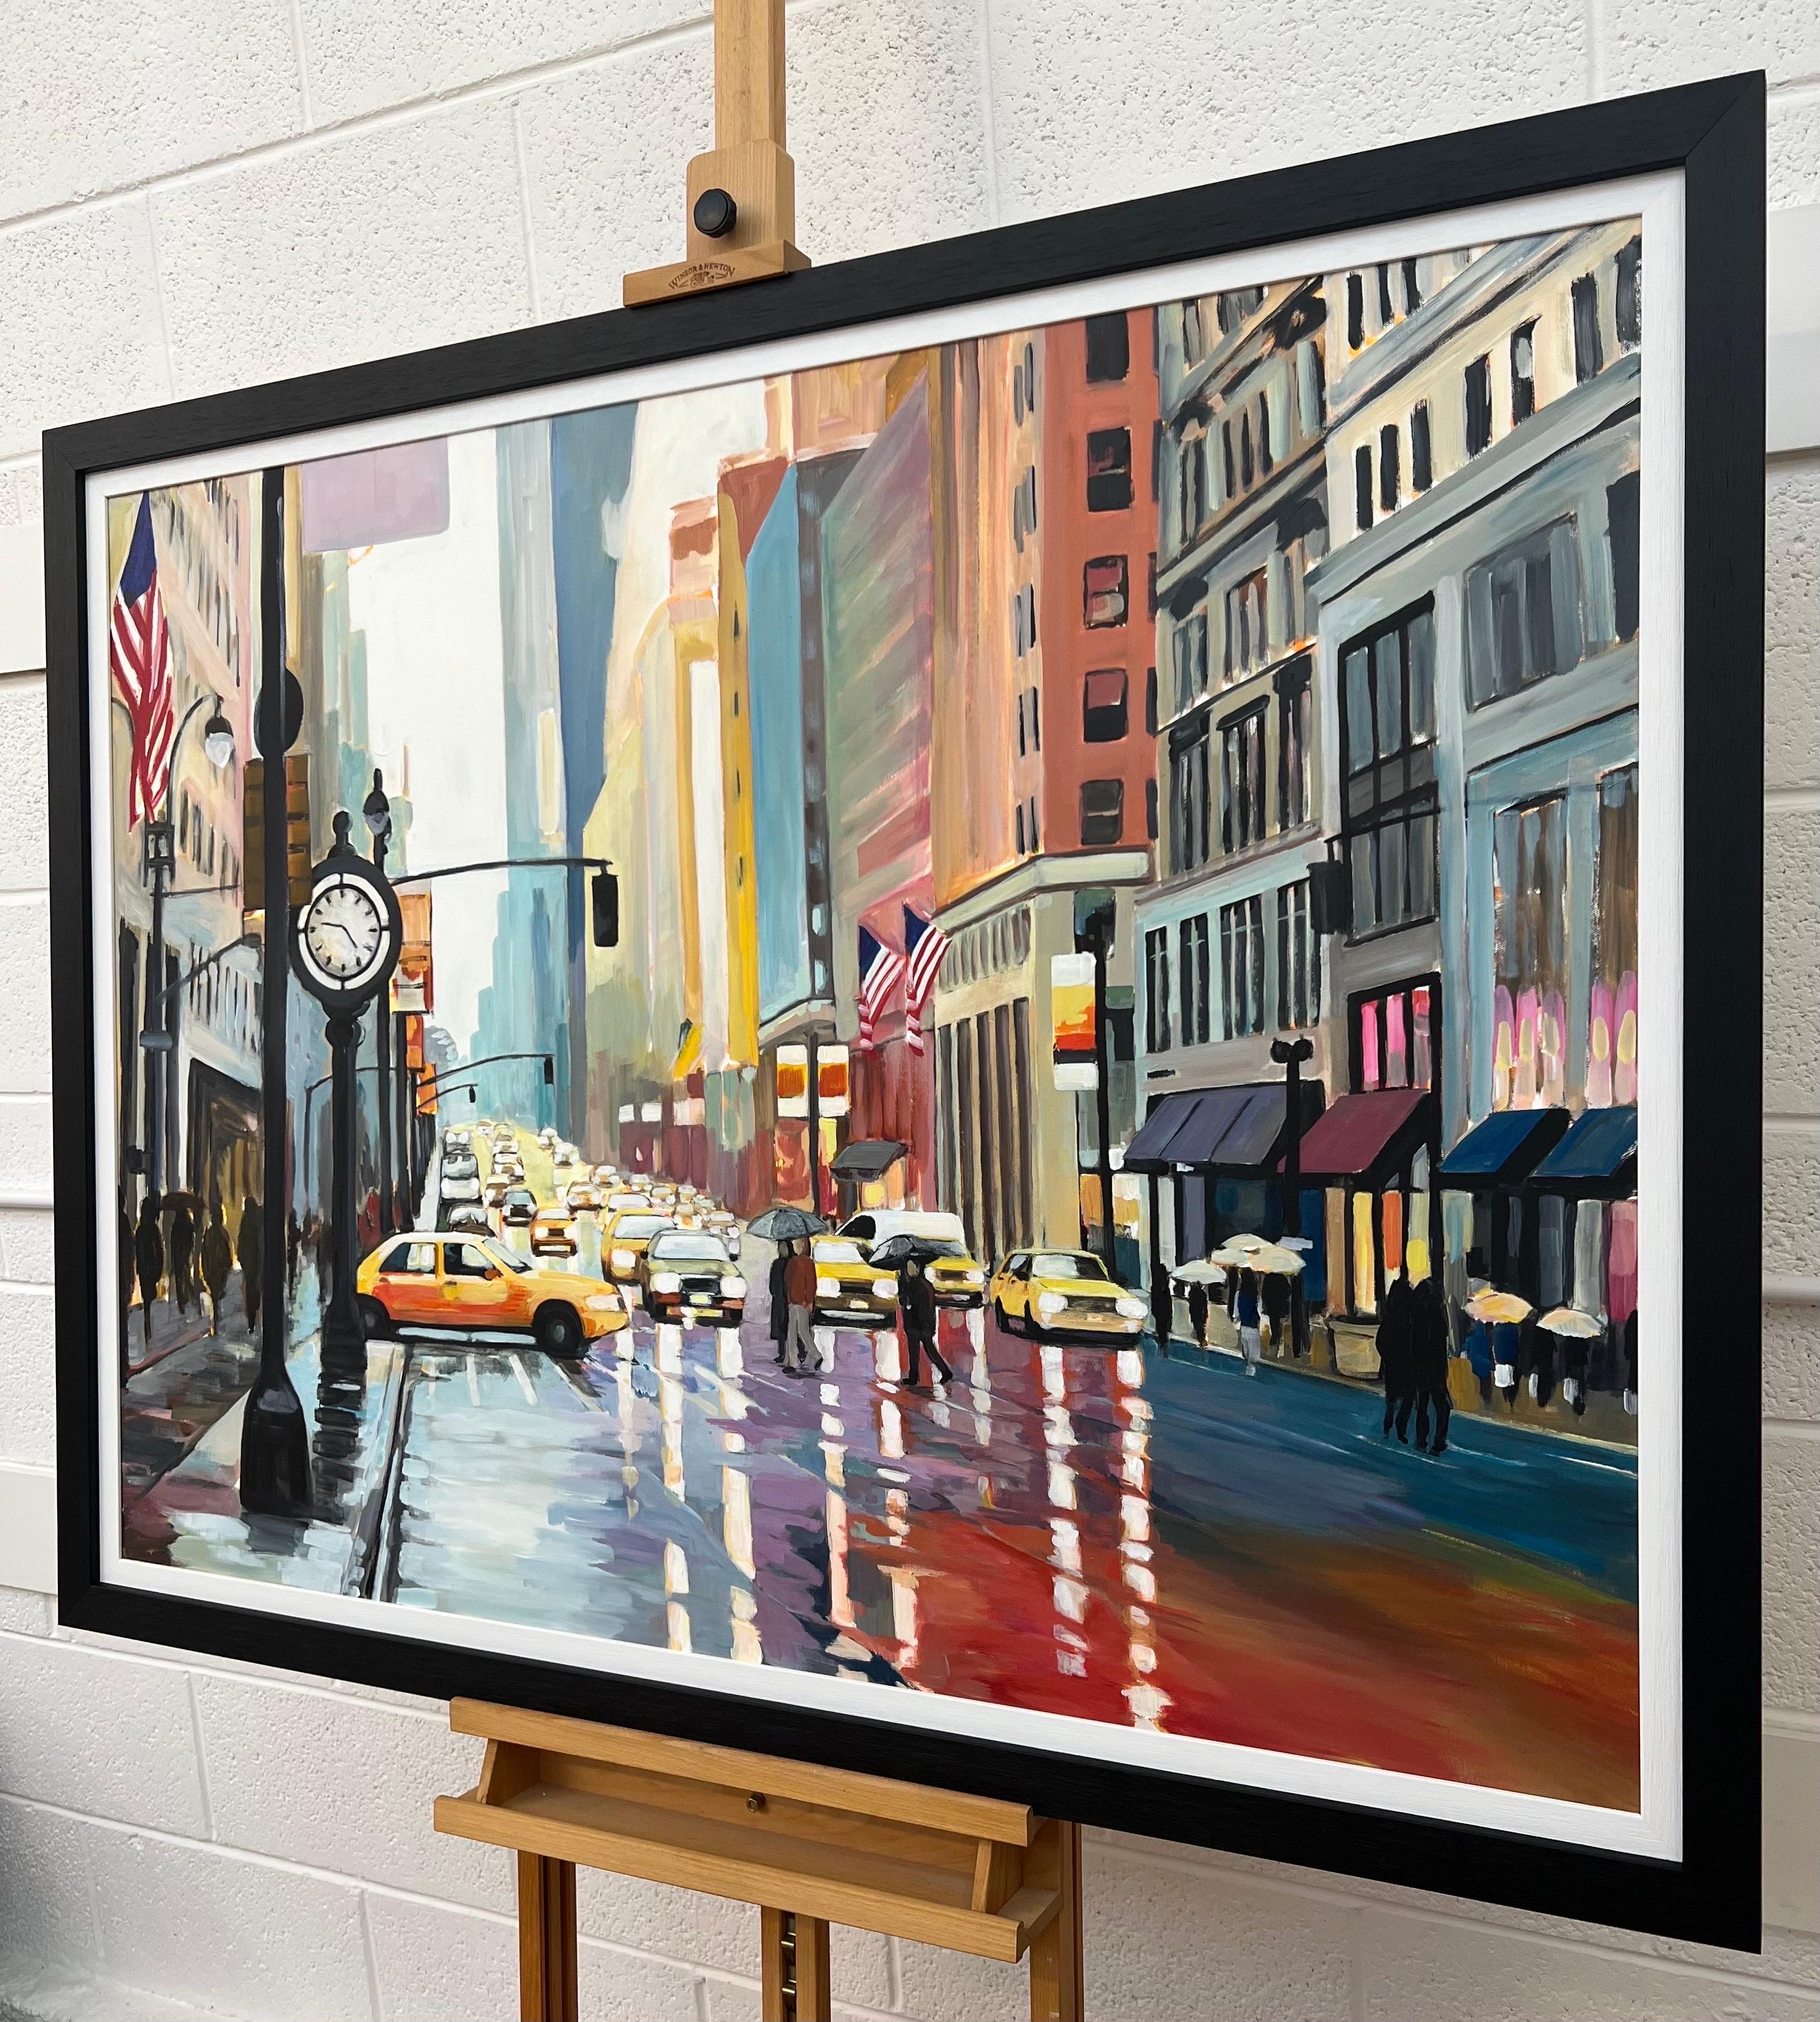 Großes Originalgemälde einer klassischen geschäftigen New Yorker Stadtszene der 1990er Jahre im Regen, mit gelben Taxis, Autos und Figuren, von der britischen Urban Landscape Artist, Angela Wakefield. Mit diesem Hauptwerk setzt sie ihre epische New